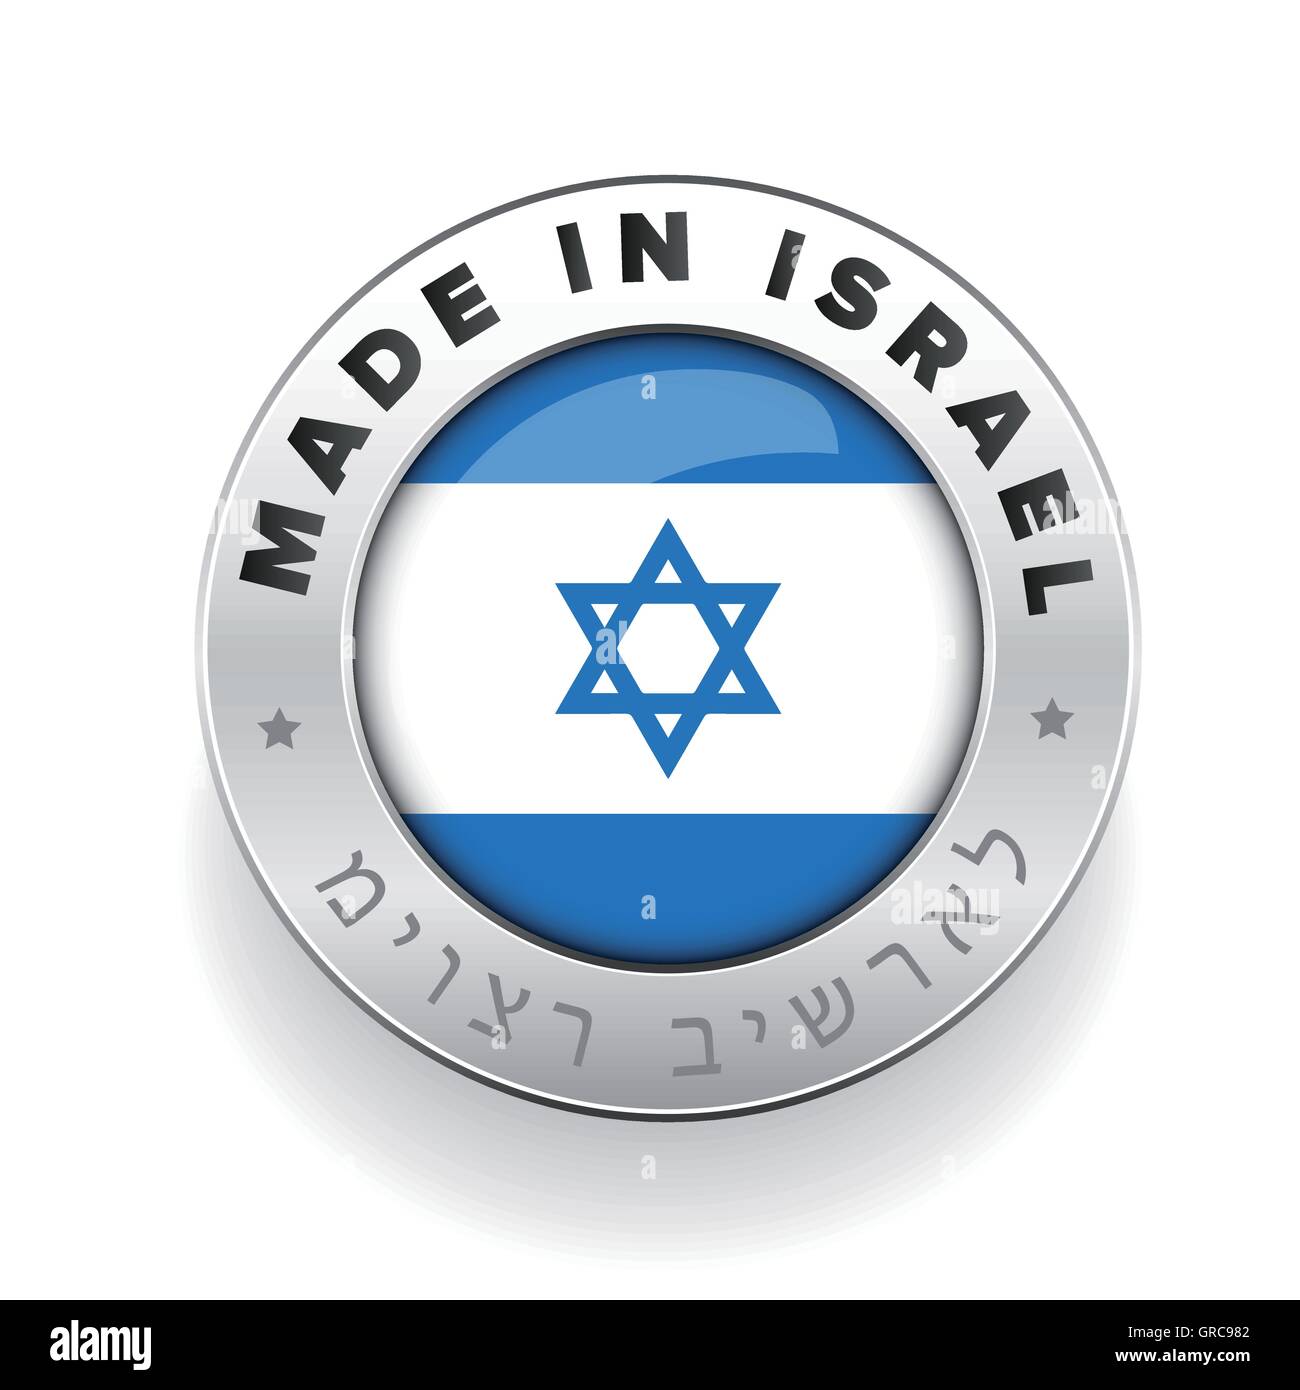 Traducción al hebreo fotografías e imágenes de alta resolución - Alamy